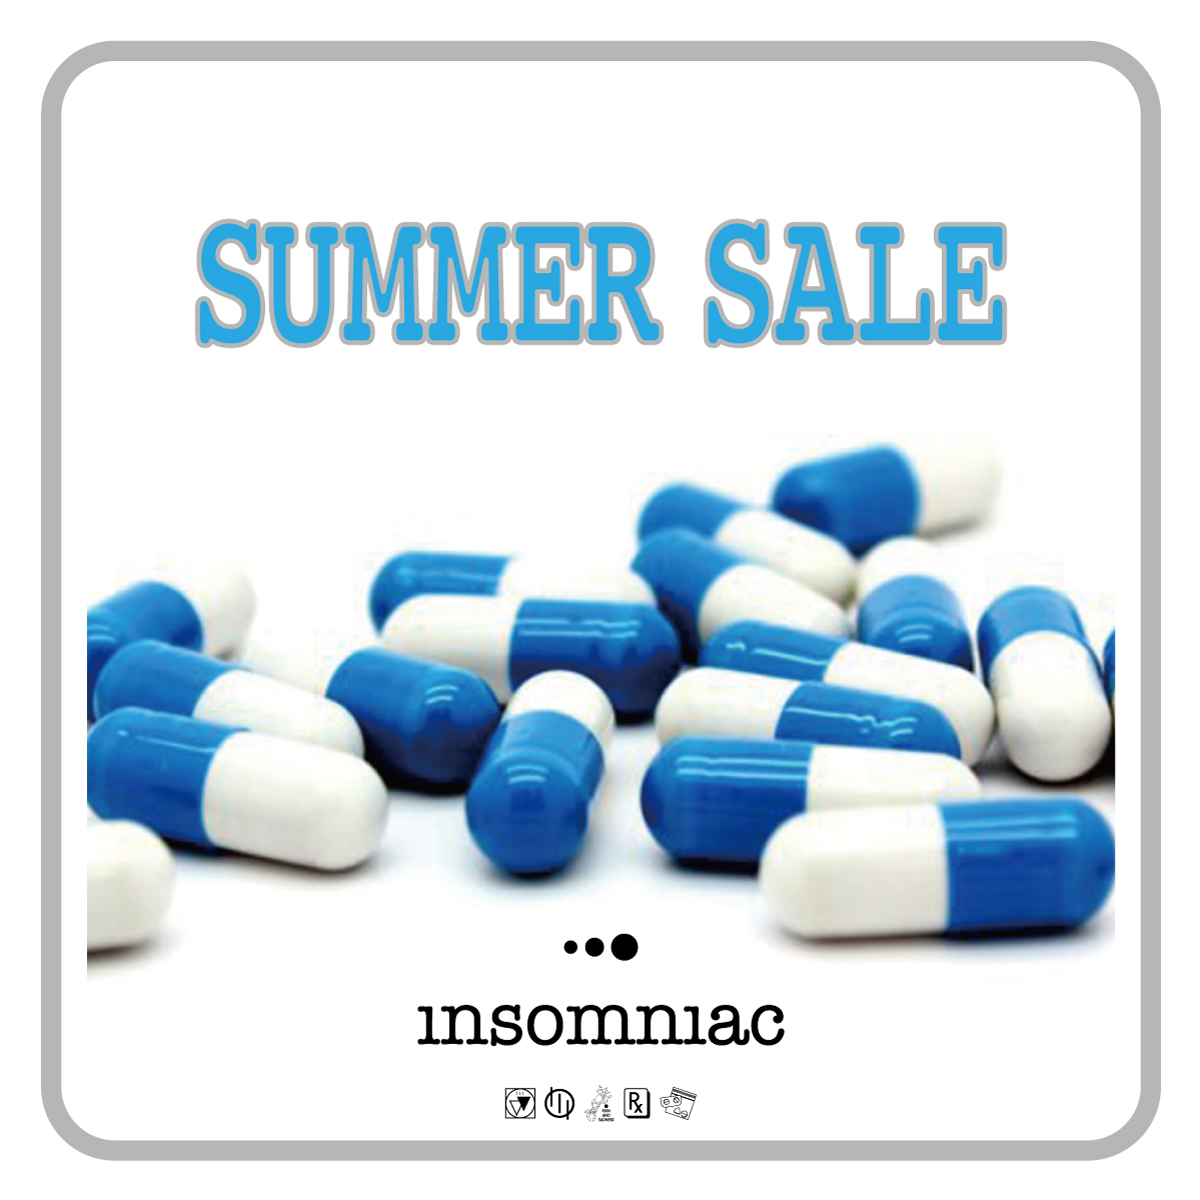 insomniac summer sale